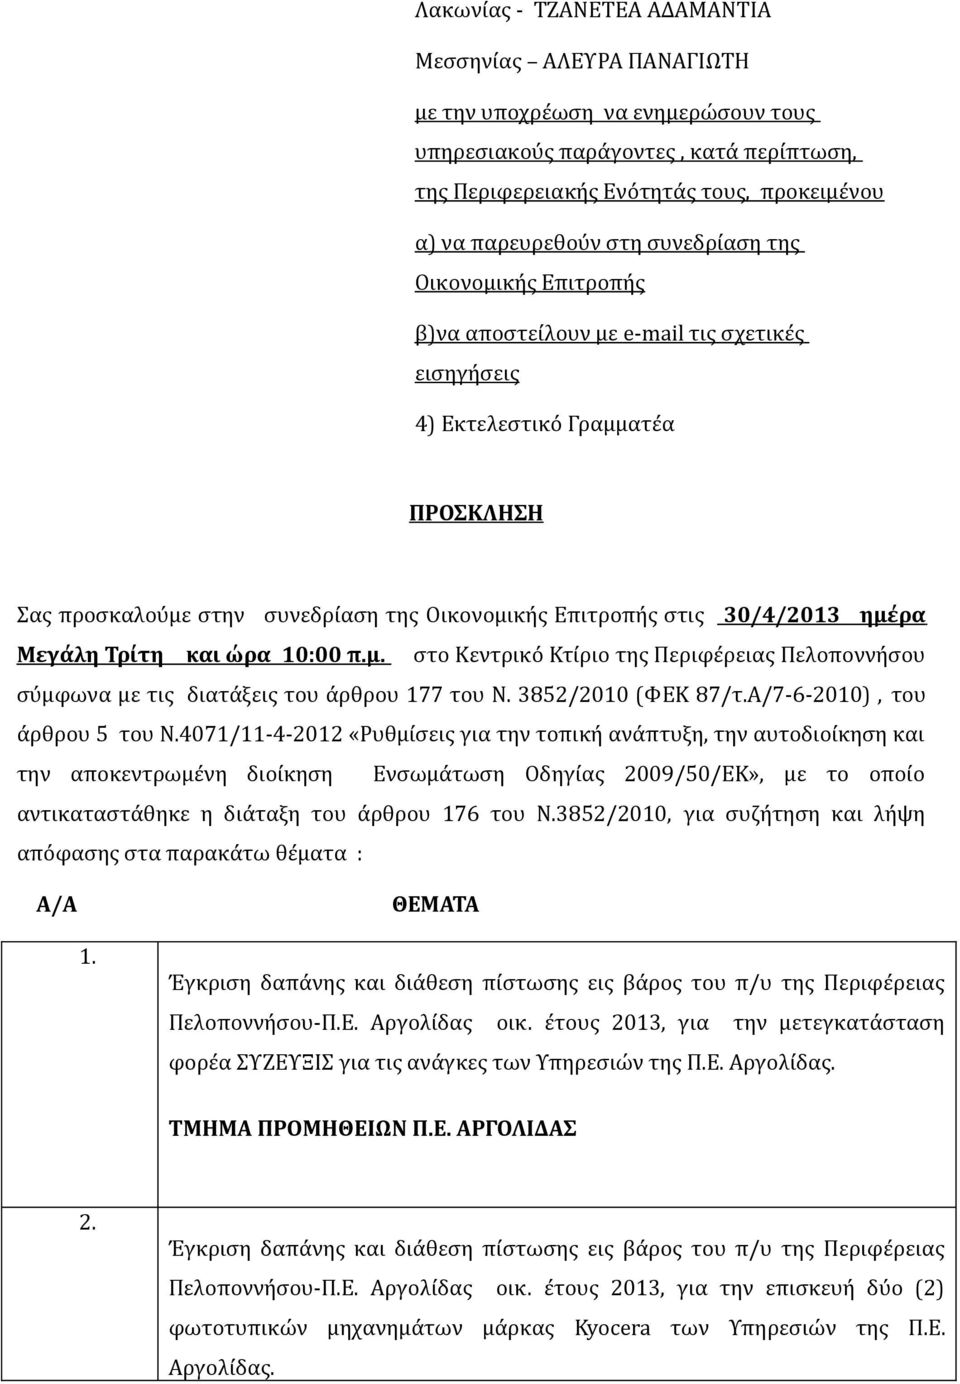 30/4/2013 ημέρα Μεγάλη Τρίτη και ώρα 10:00 π.μ. στο Κεντρικό Κτίριο της Περιφέρειας Πελοποννήσου σύμφωνα με τις διατάξεις του άρθρου 177 του Ν. 3852/2010 (ΦΕΚ 87/τ.Α/7-6-2010), του άρθρου 5 του Ν.